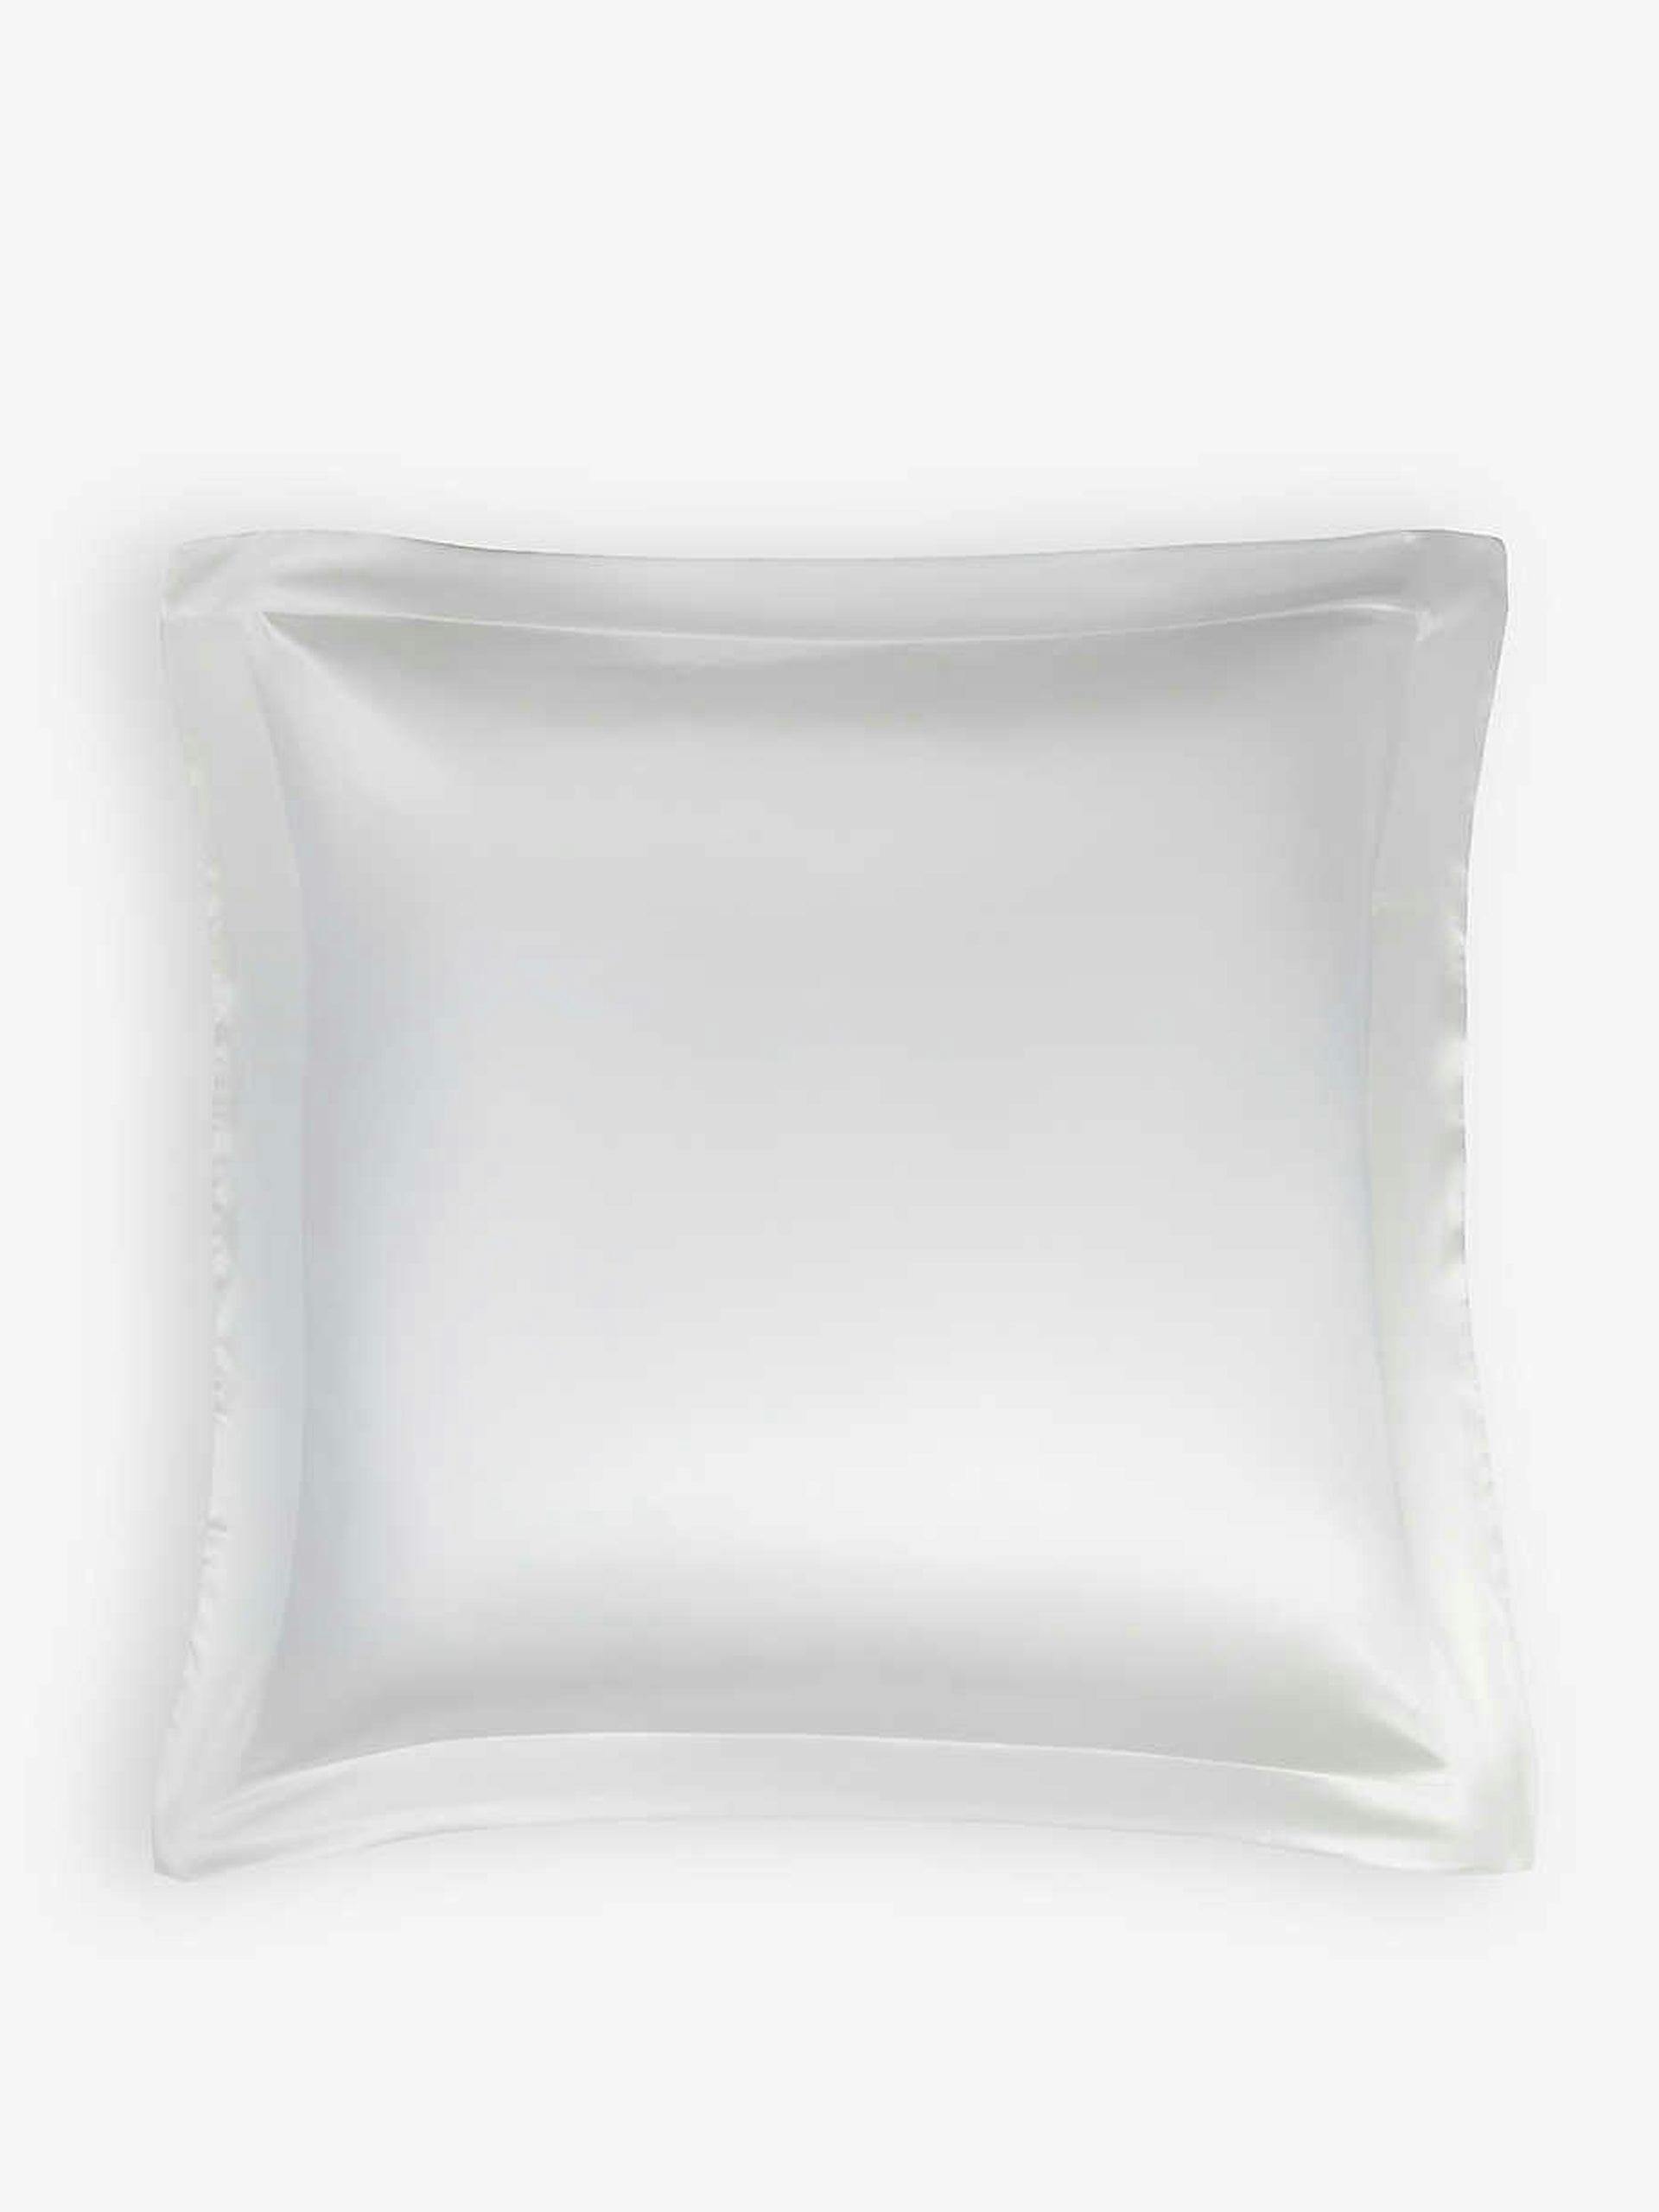 White silk pillowcase